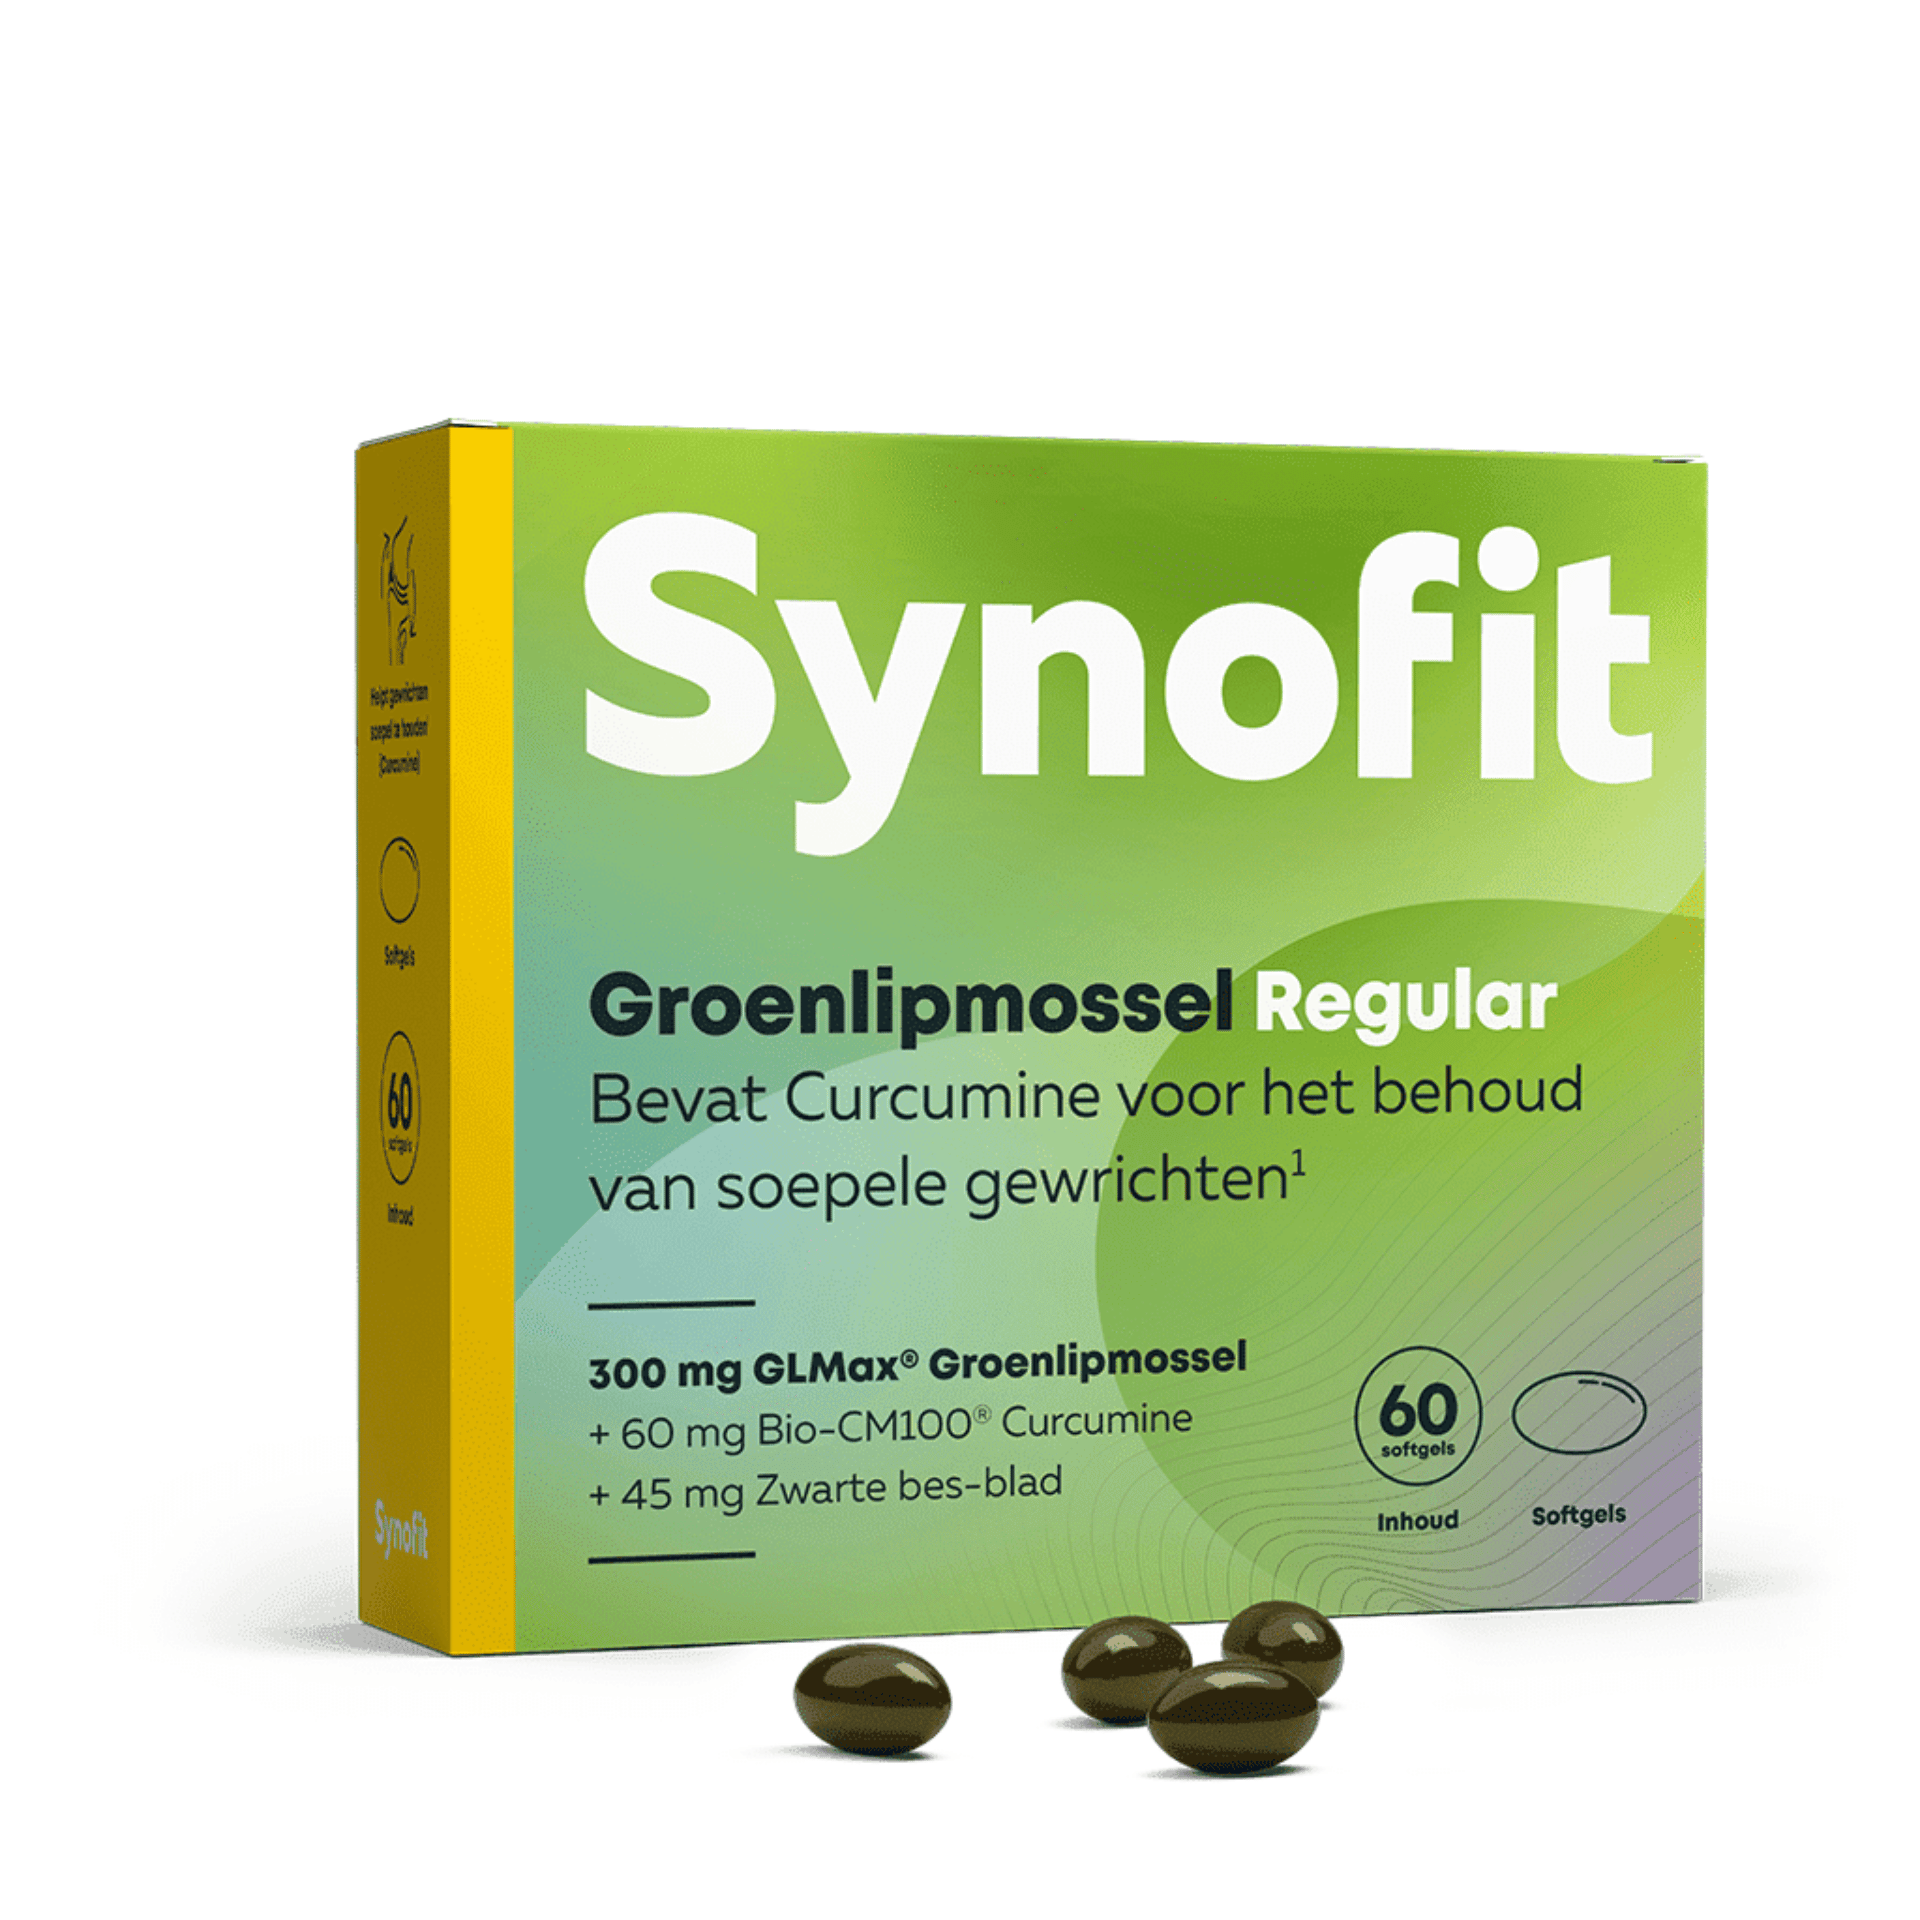 Synofit Groenlipmossel Regular 60 capsules